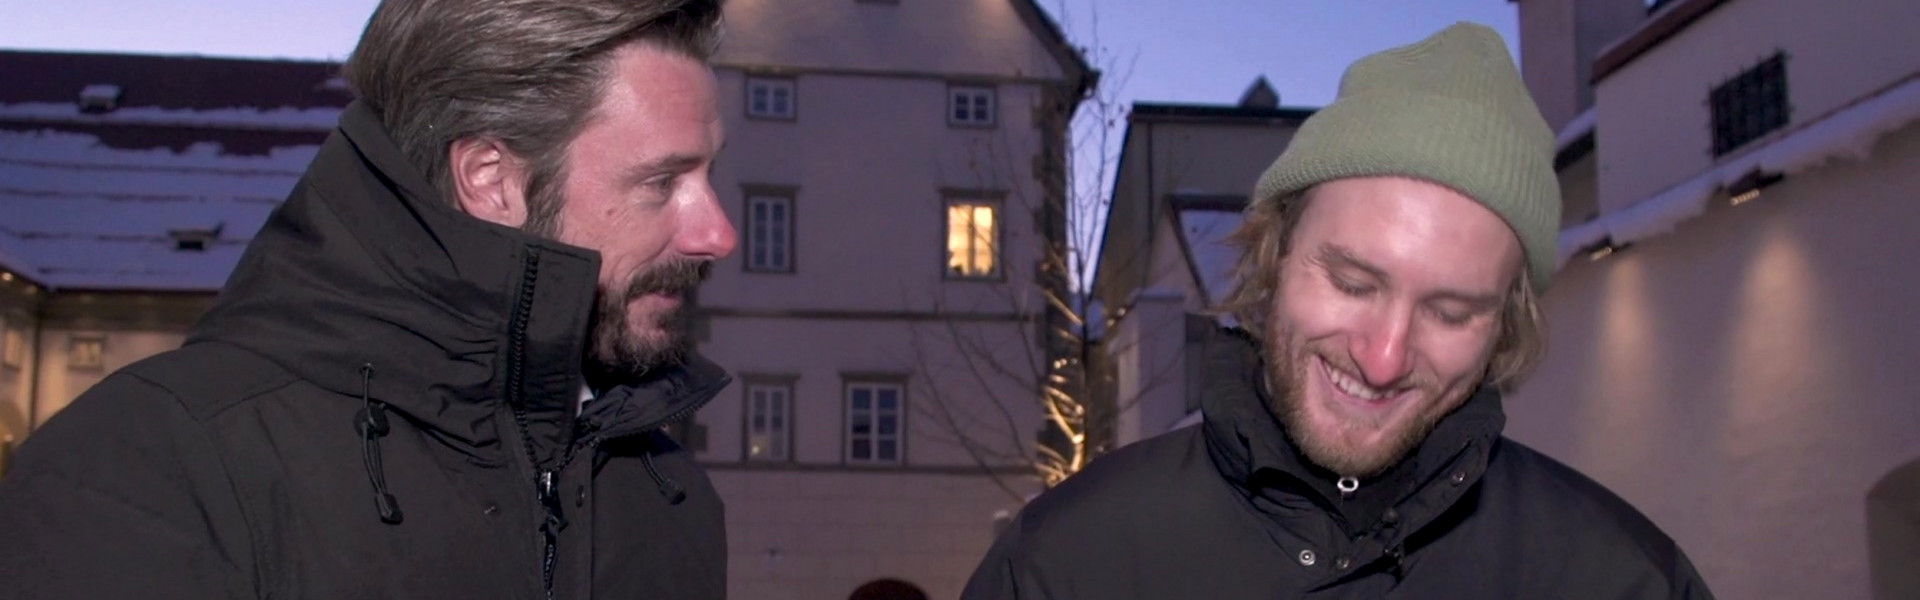 Bei #Rotjacken-TV nimmt sich Johannes Bischofberger Zeit für ein ausführliches Interview mit nicht alltäglicher Gesprächsführung